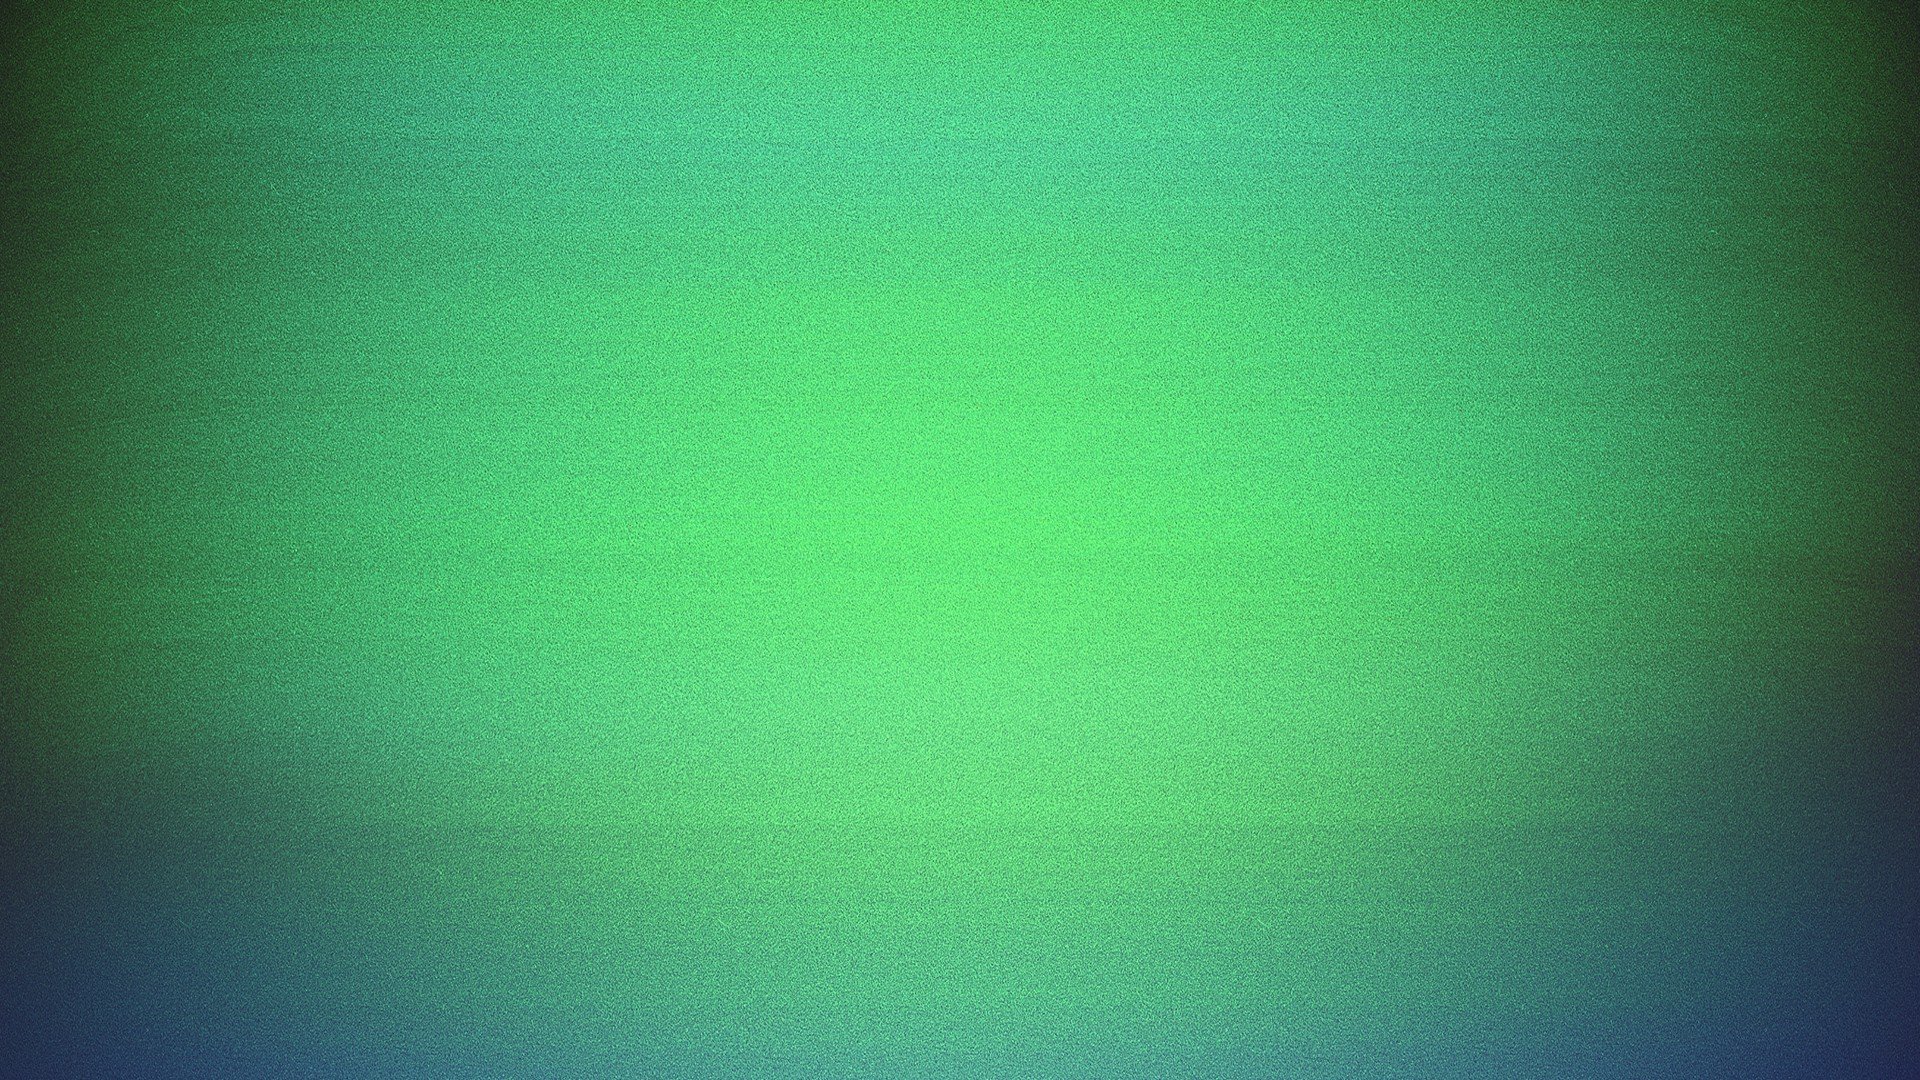 green, Pretty colors, Film grain Wallpaper